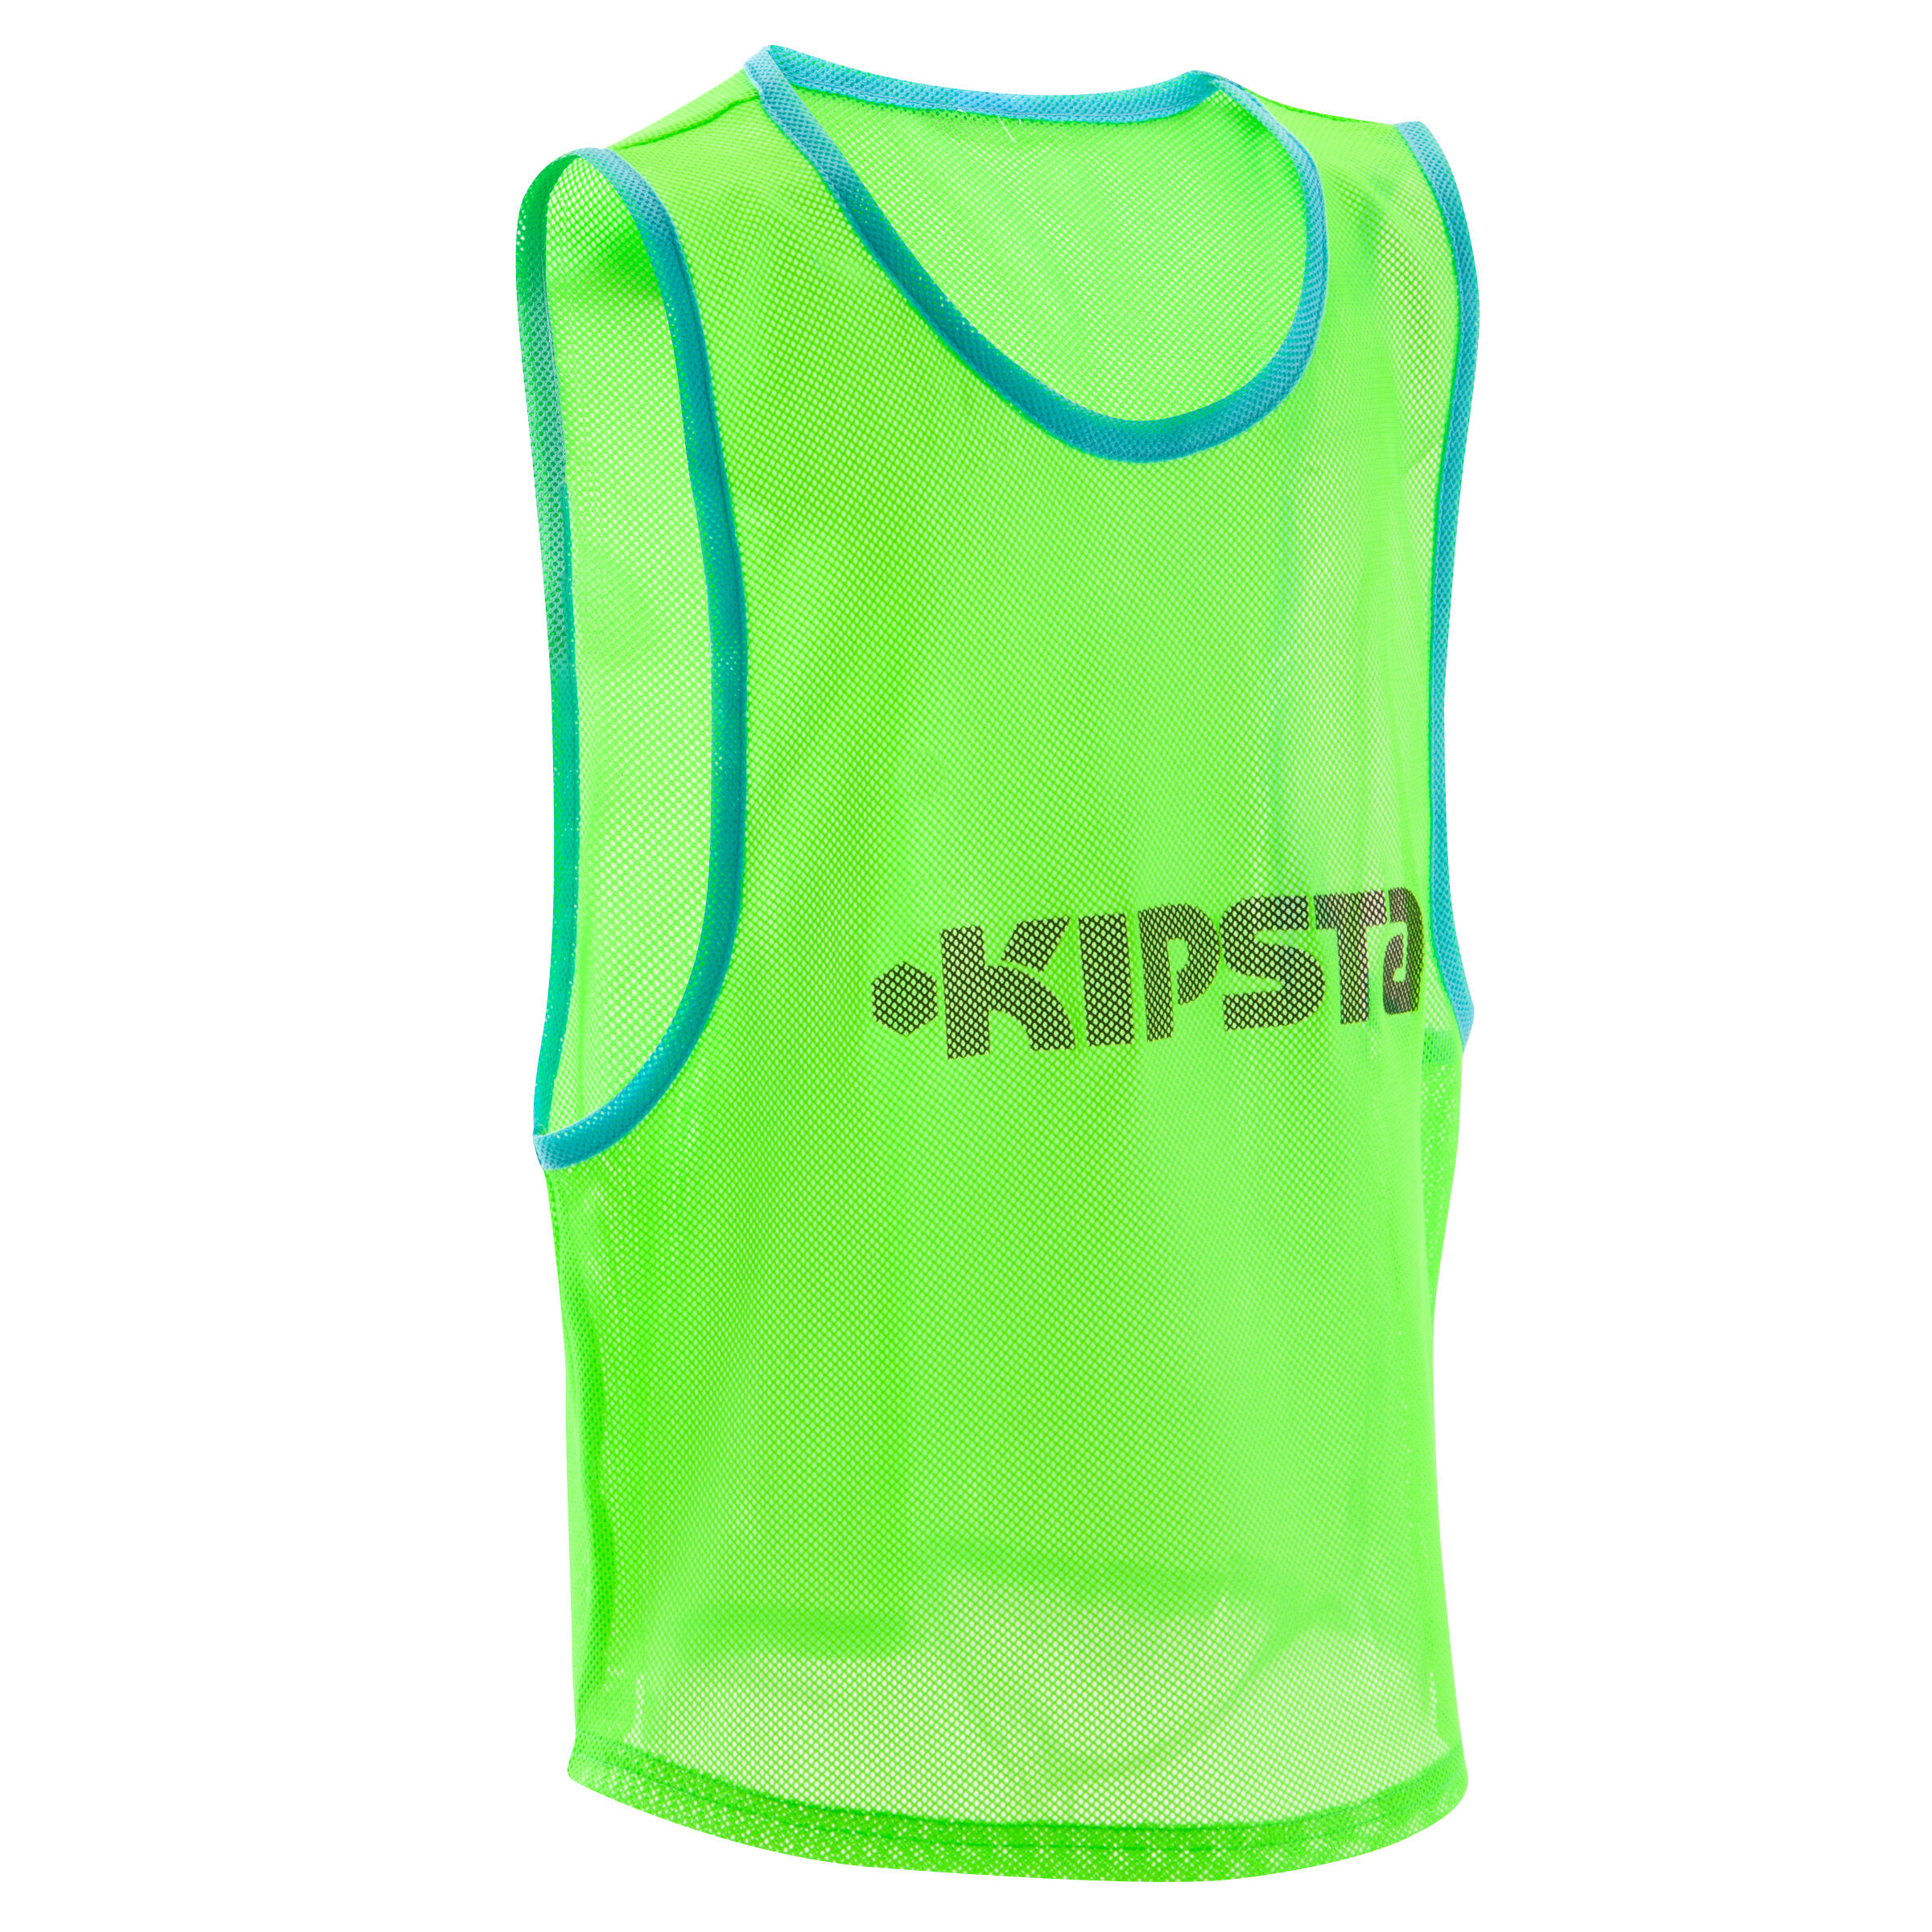 KIPSTA Kids' Team Sports Football Bib - Green